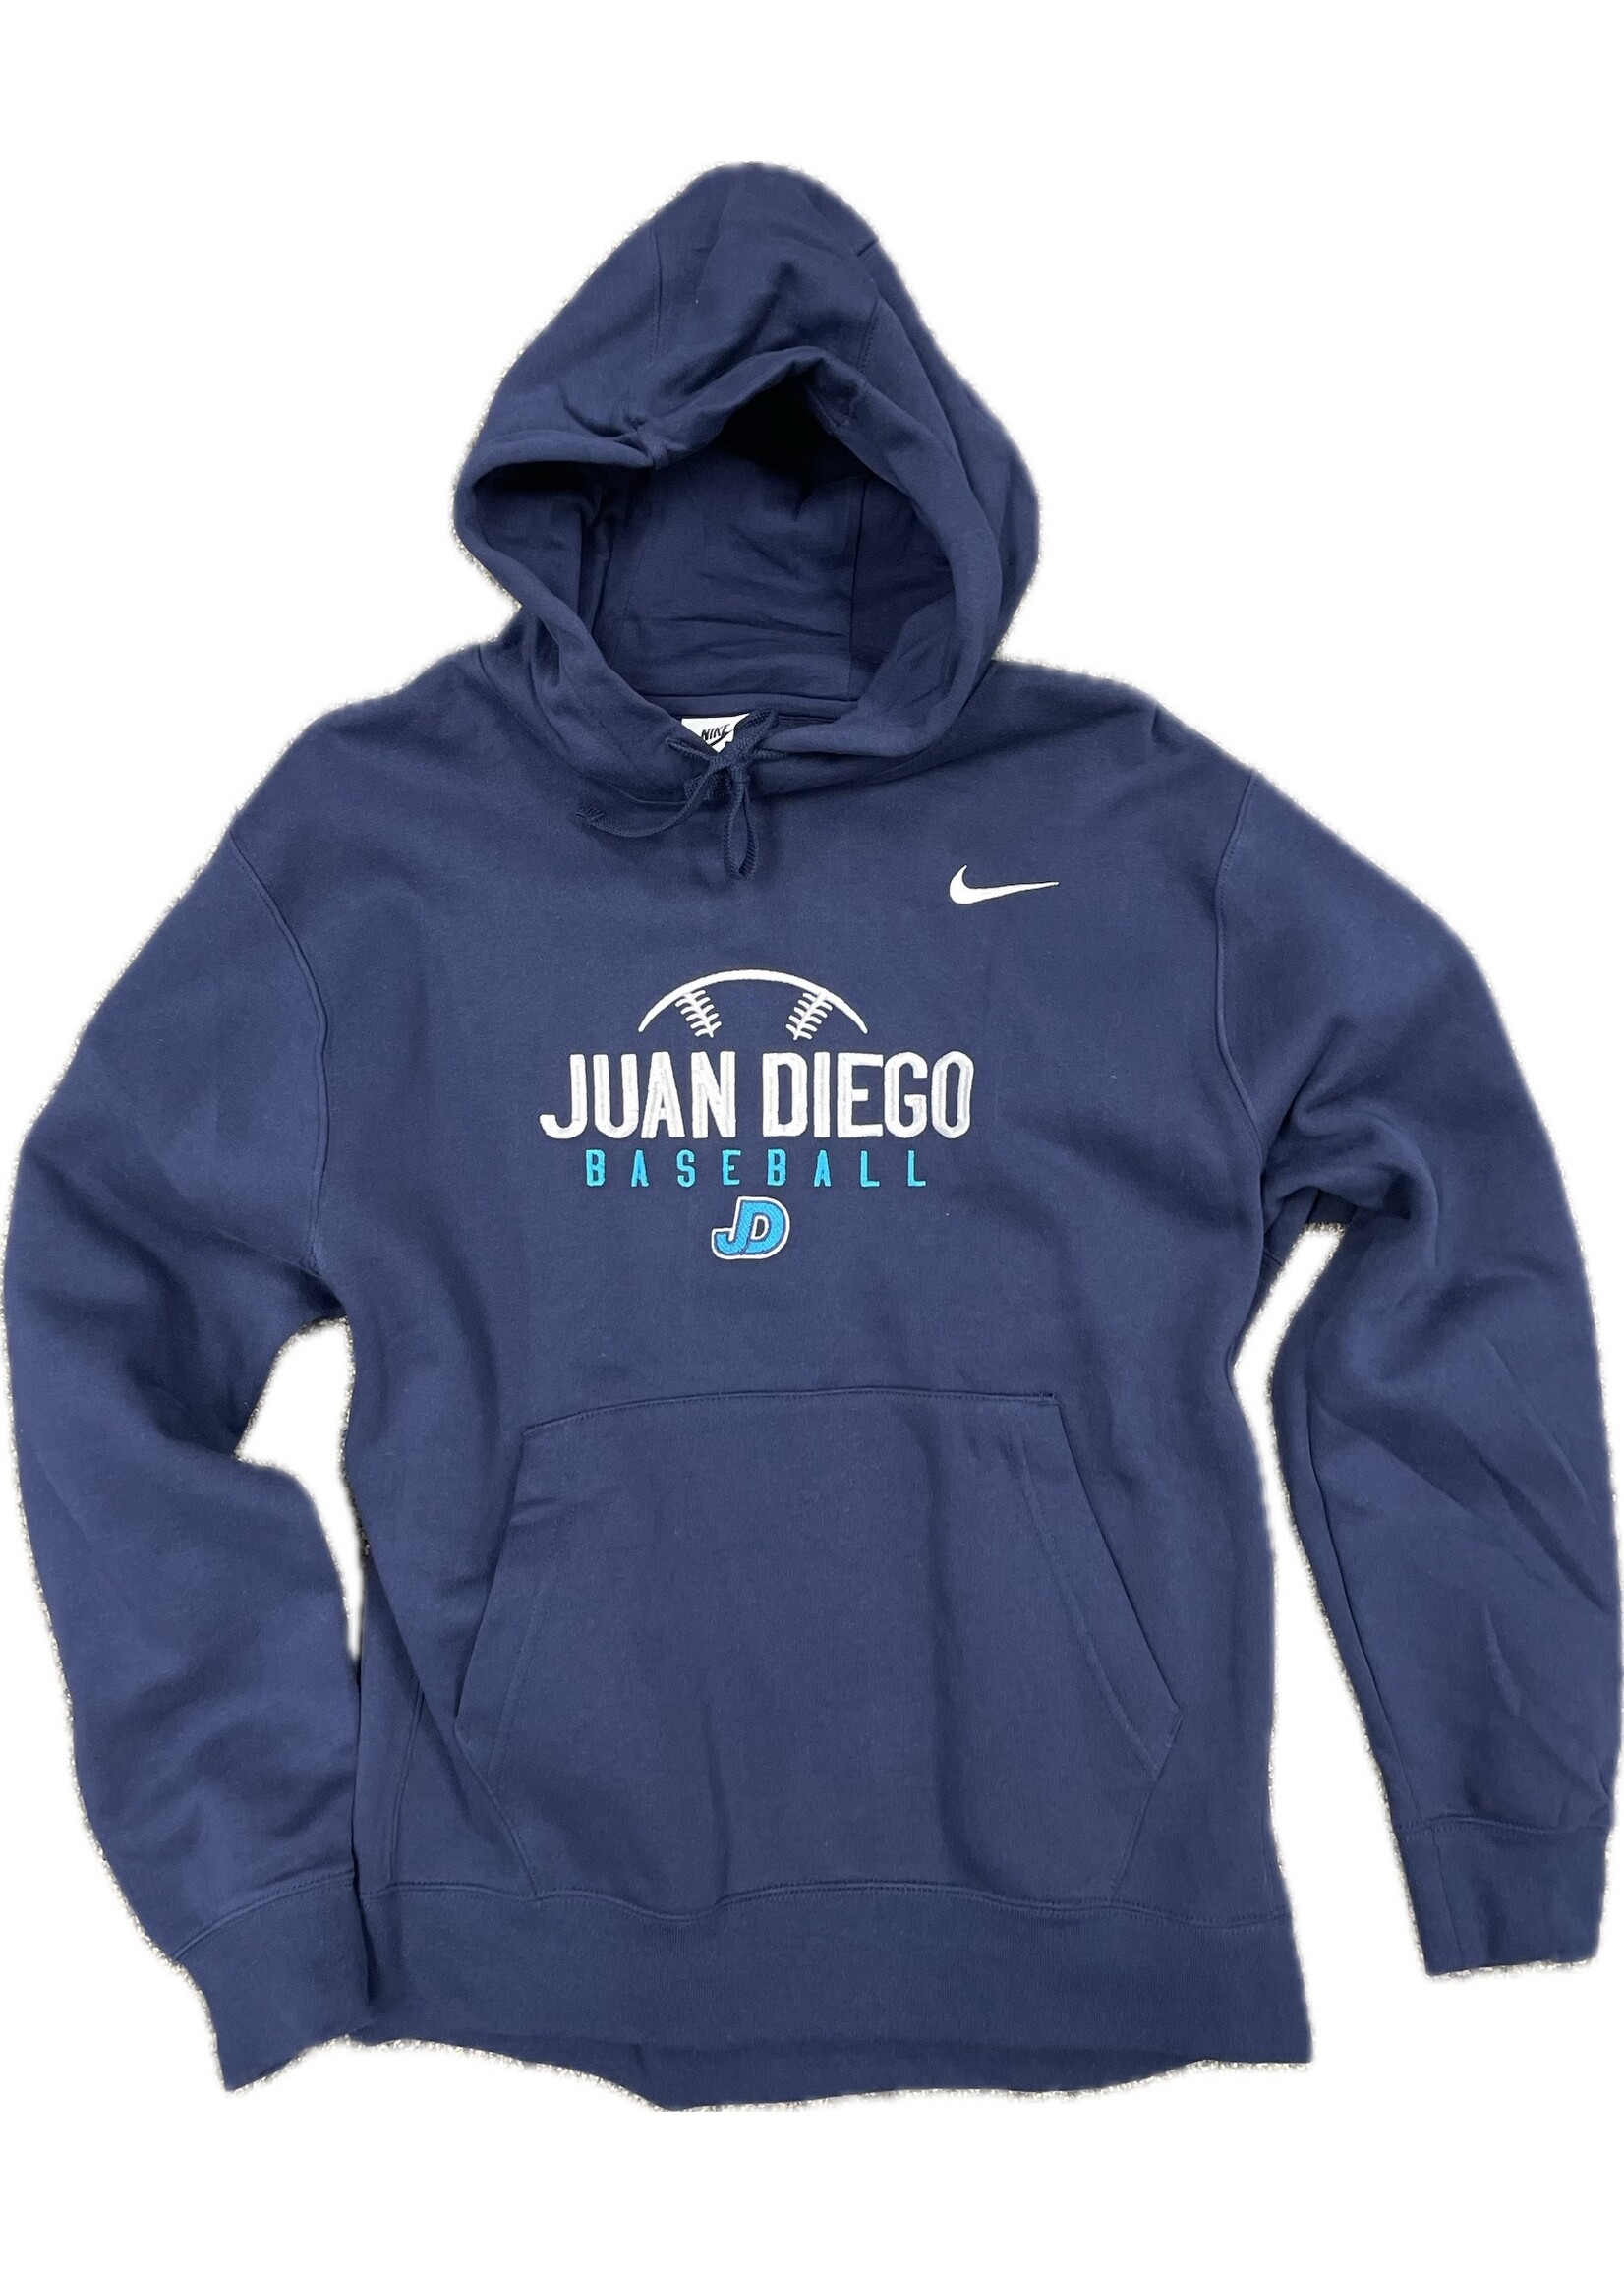 NON-UNIFORM Baseball Kiosk - Nike Juan Diego Baseball JD Hooded Pullover